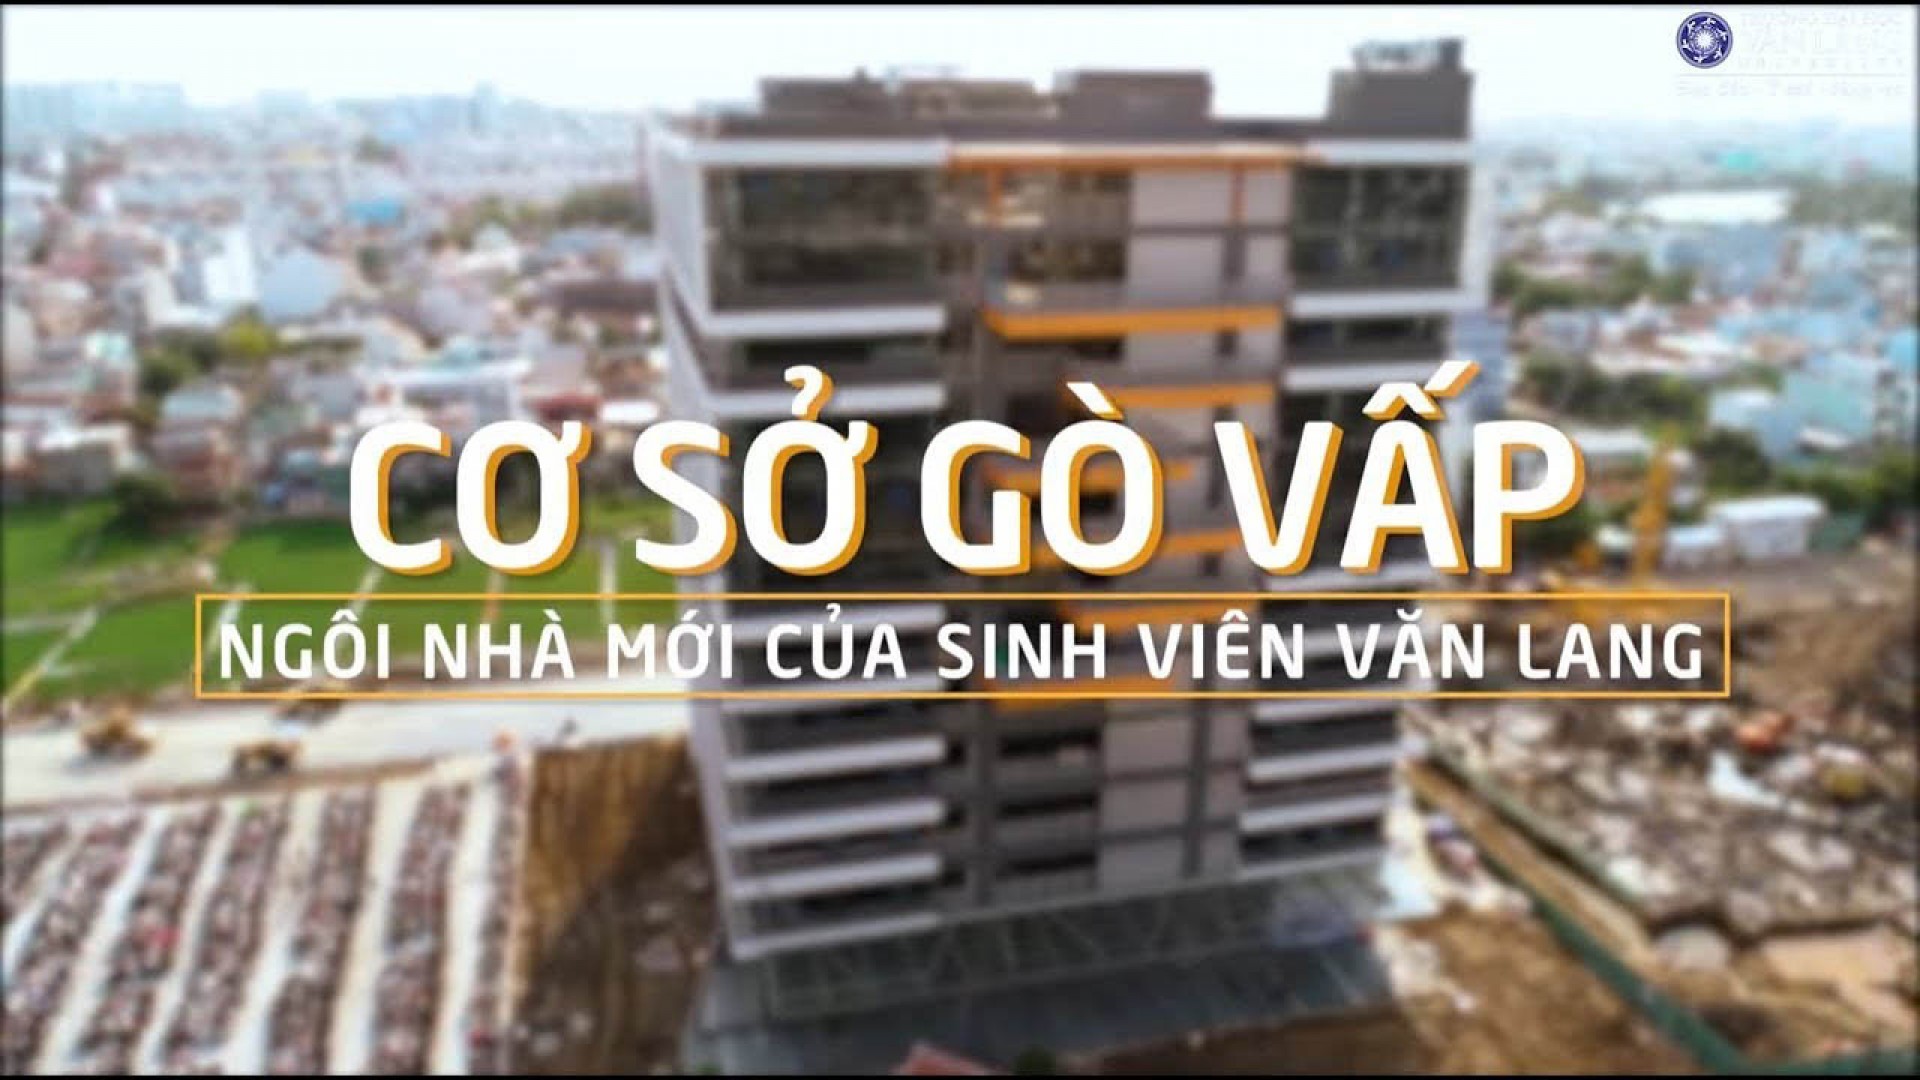 Đại học Văn Lang cơ sở 3 – Mùa đông giữa lòng Sài Gòn